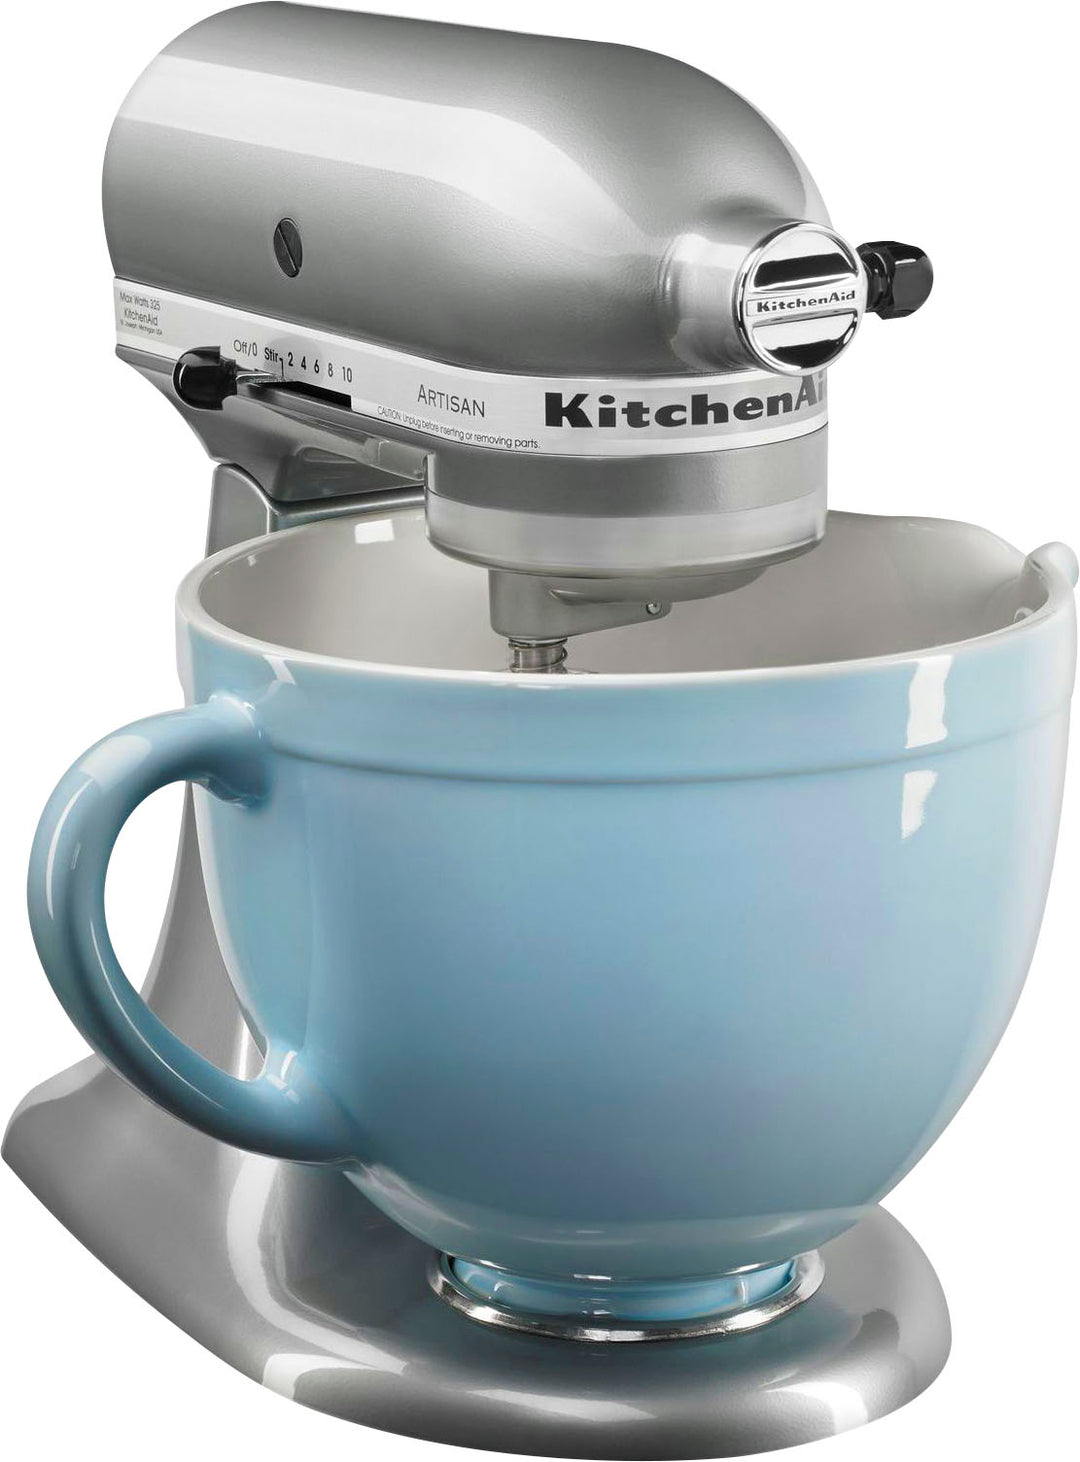 KitchenAid - KSM150PSMC Artisan Series Tilt-Head Stand Mixer - Metallic Chrome_15